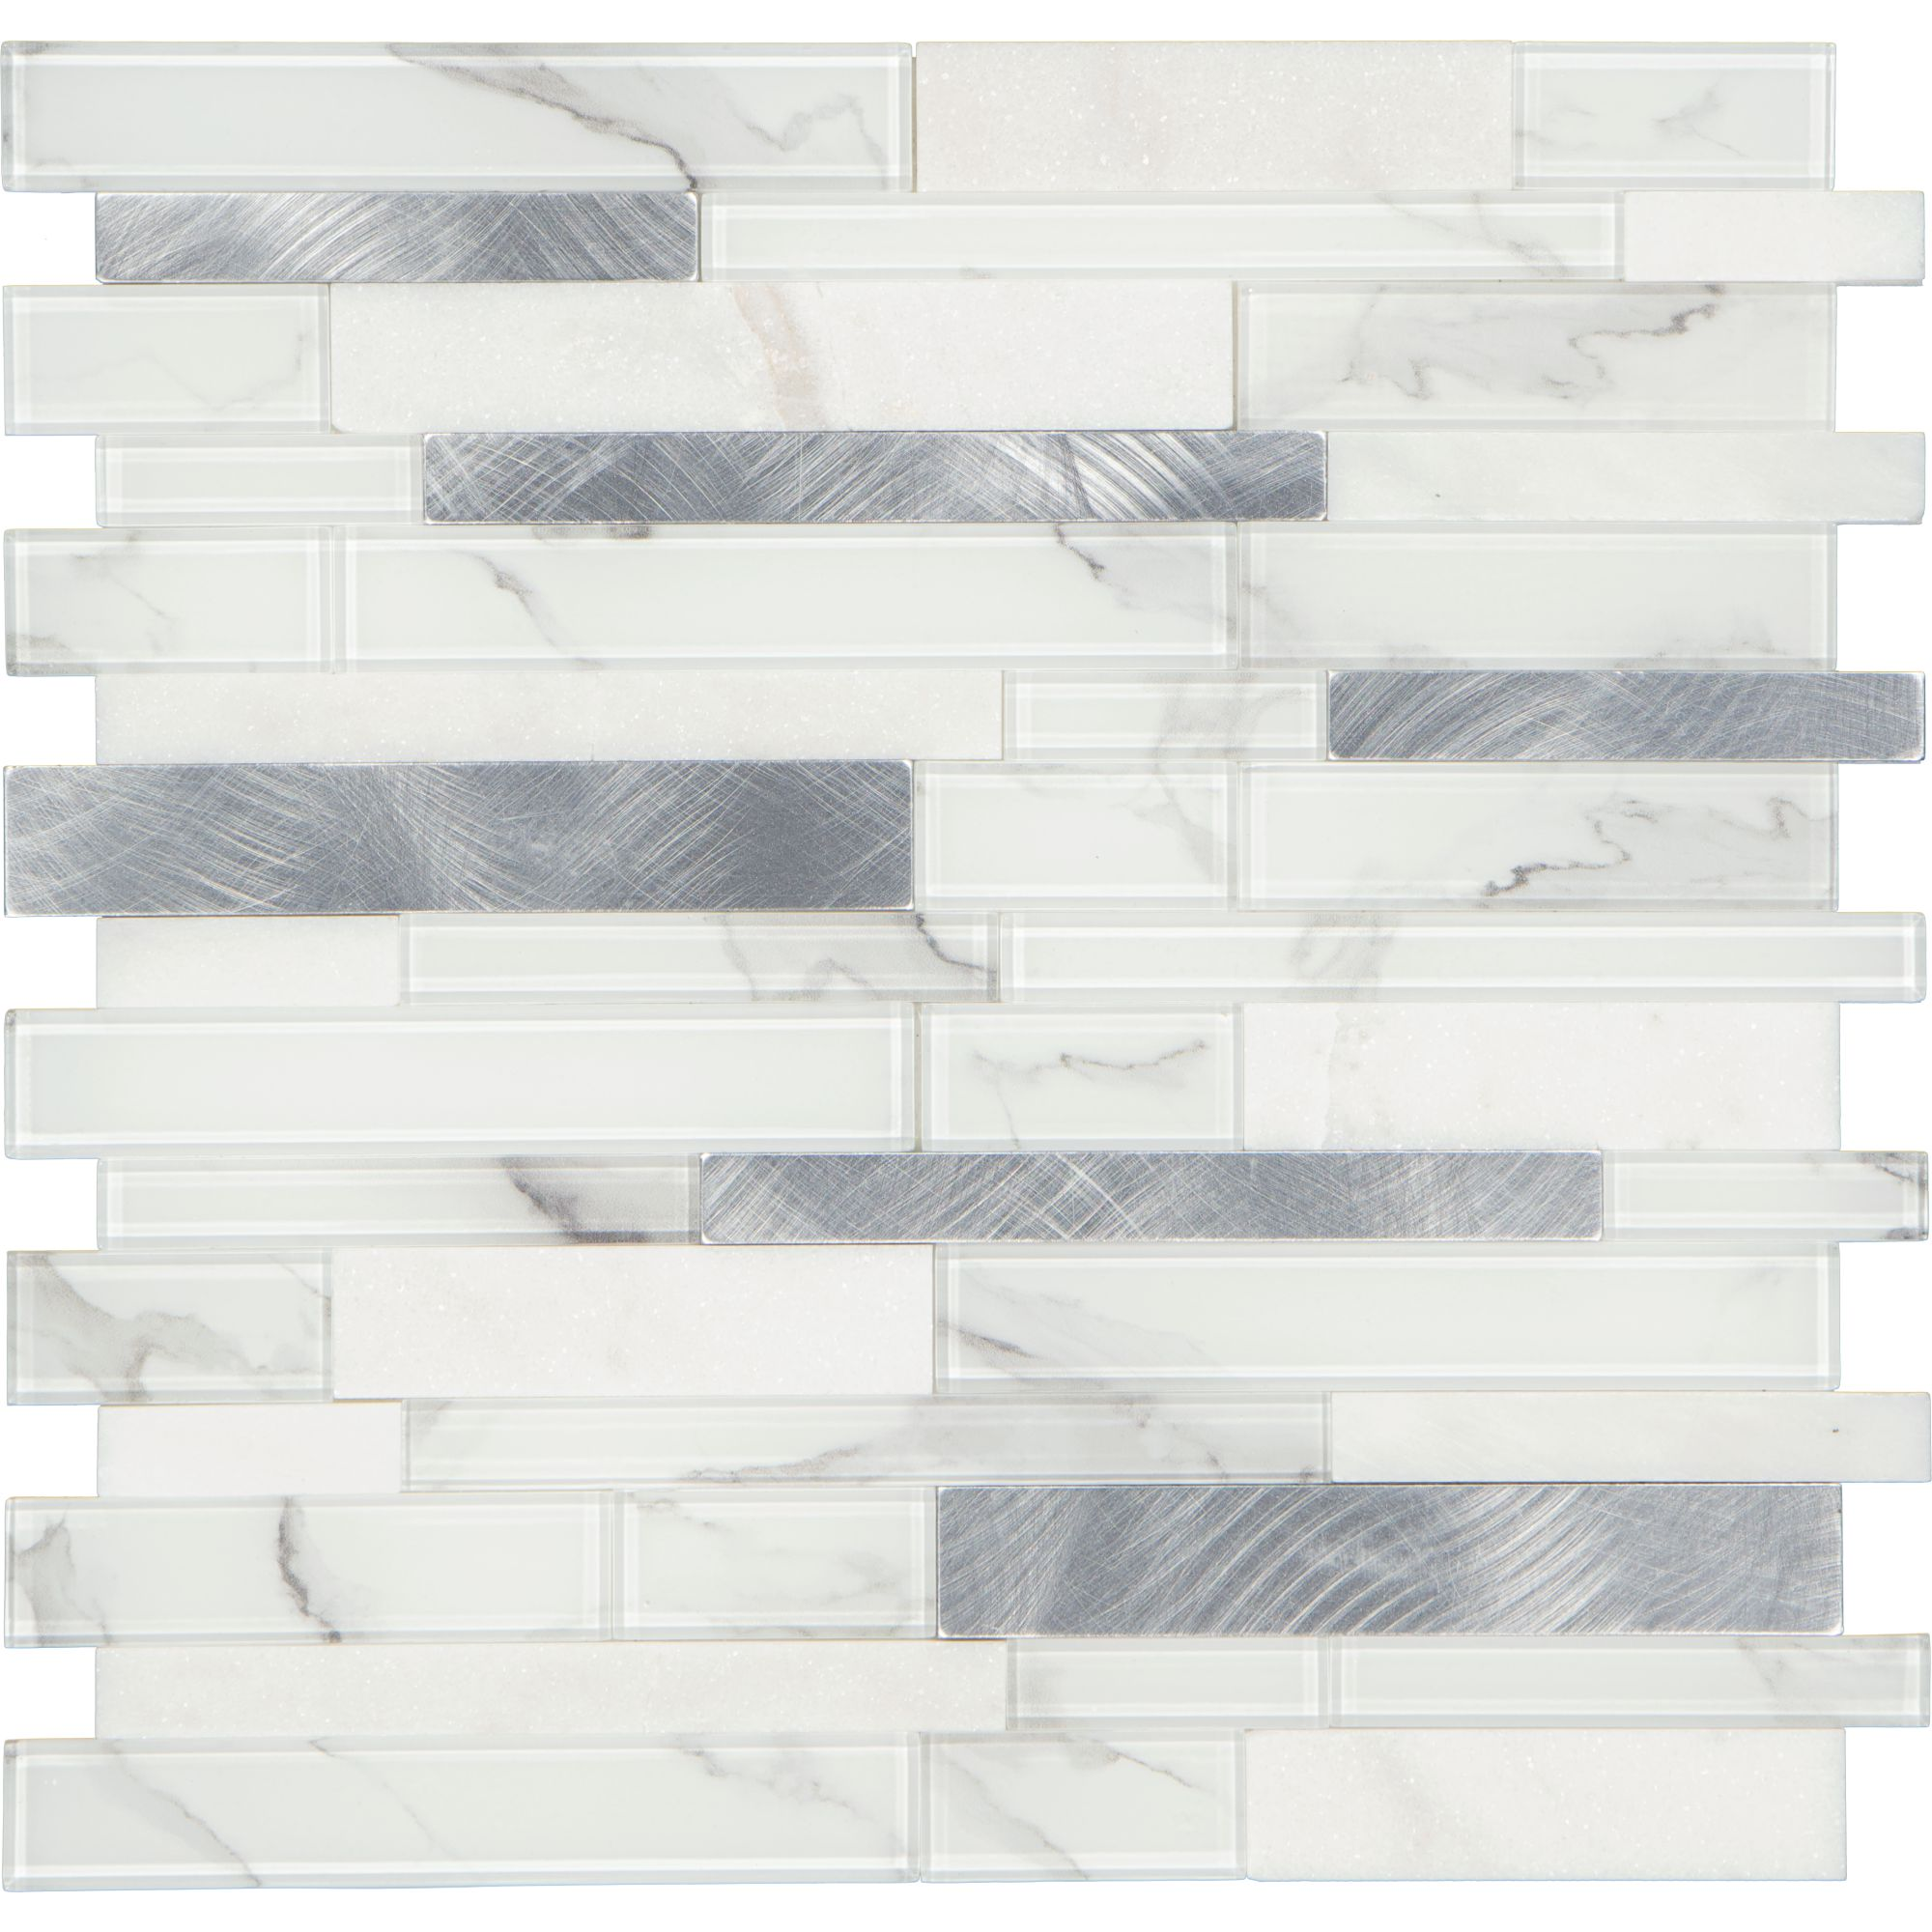 Mosaikfliese 'Easyglue' selbstklebend weiß/grau Kunststoff 30,5 x 30,5 cm + product picture